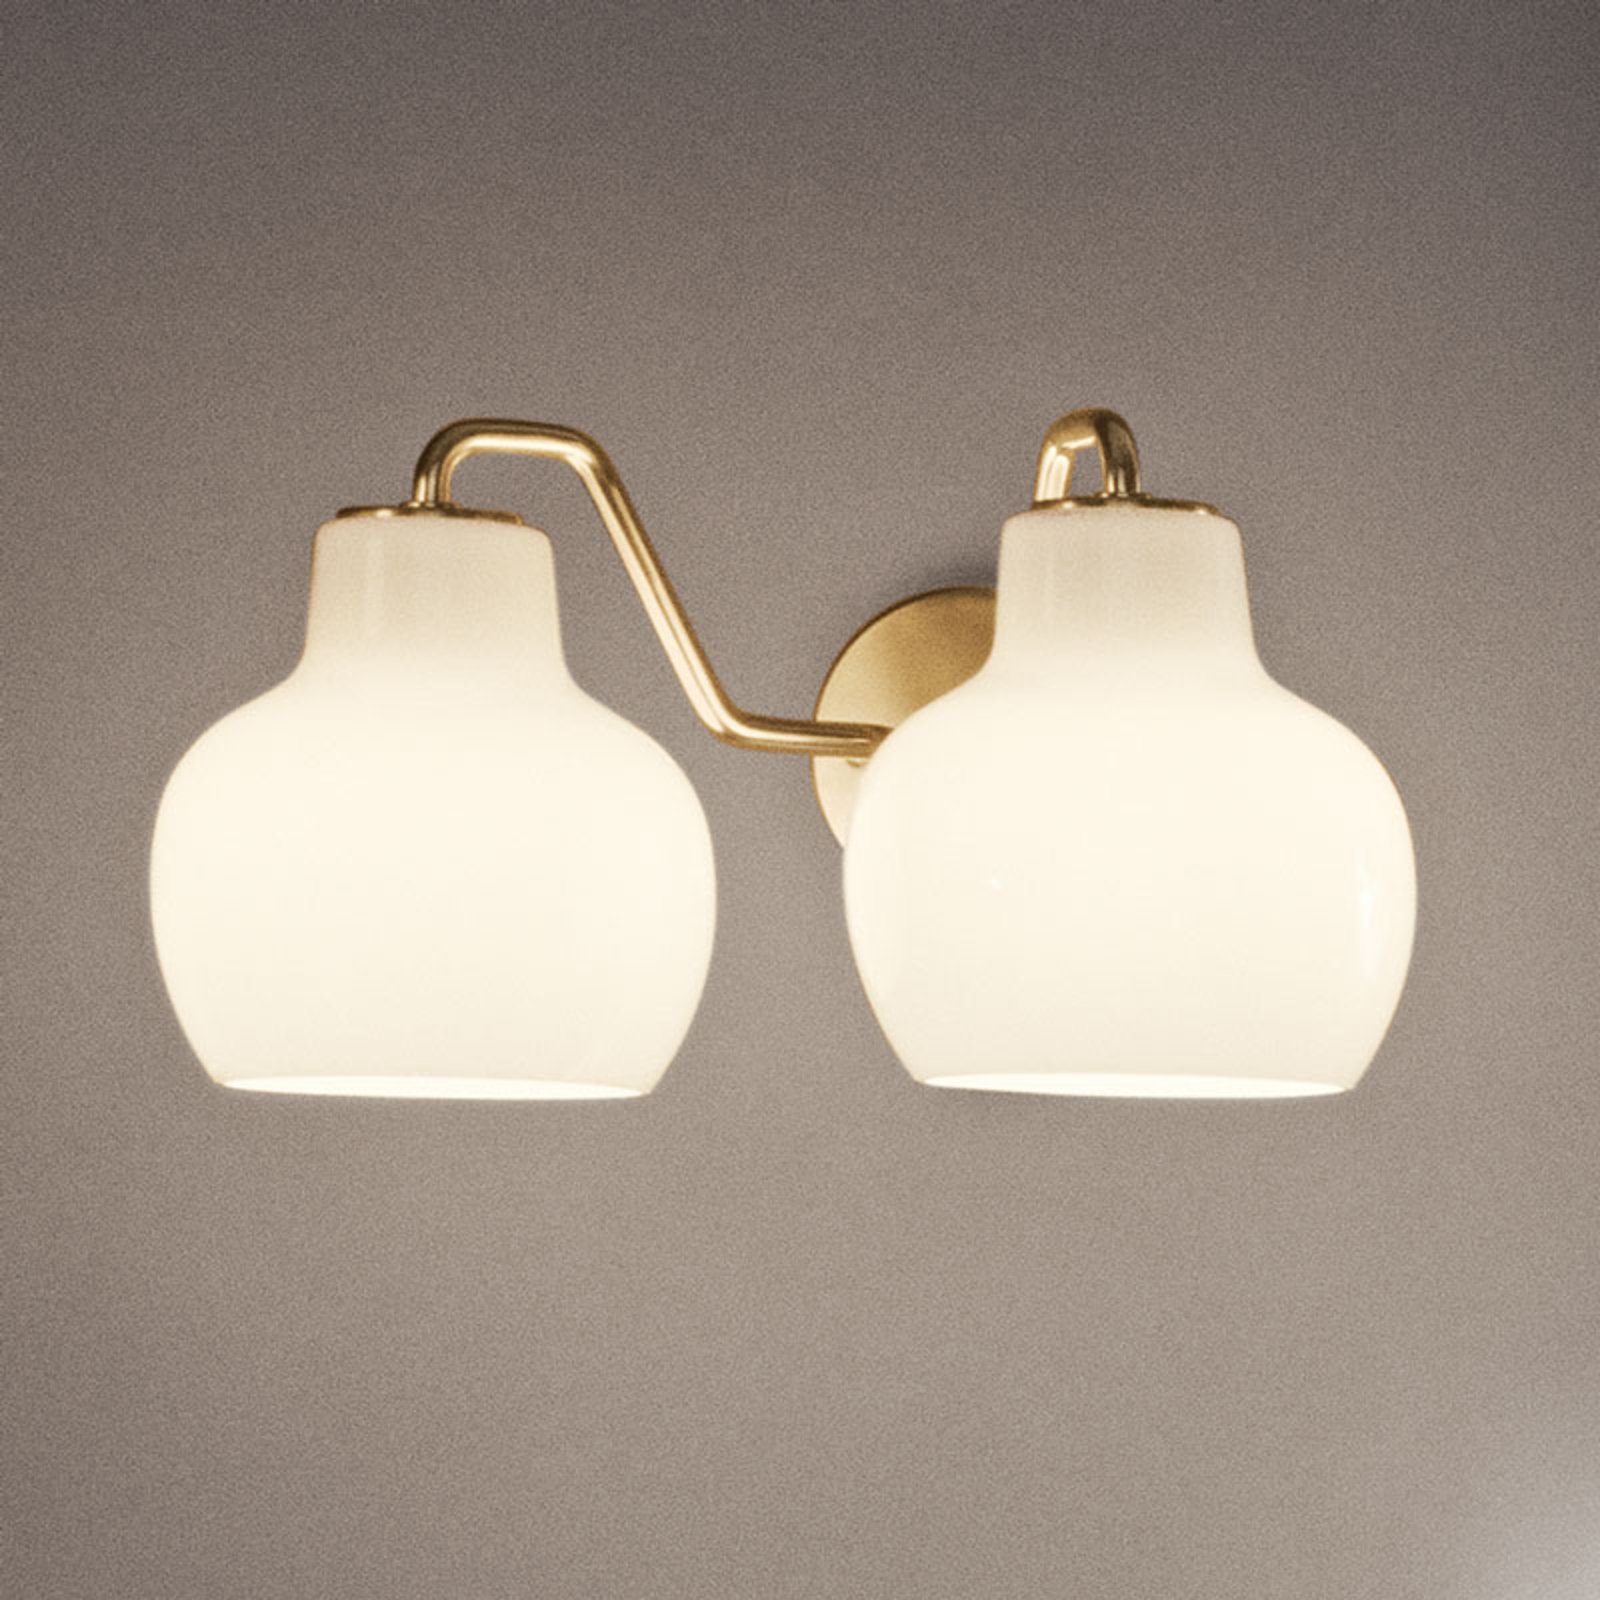 Louis Poulsen wandlamp VL ring Crown, 2-lamps